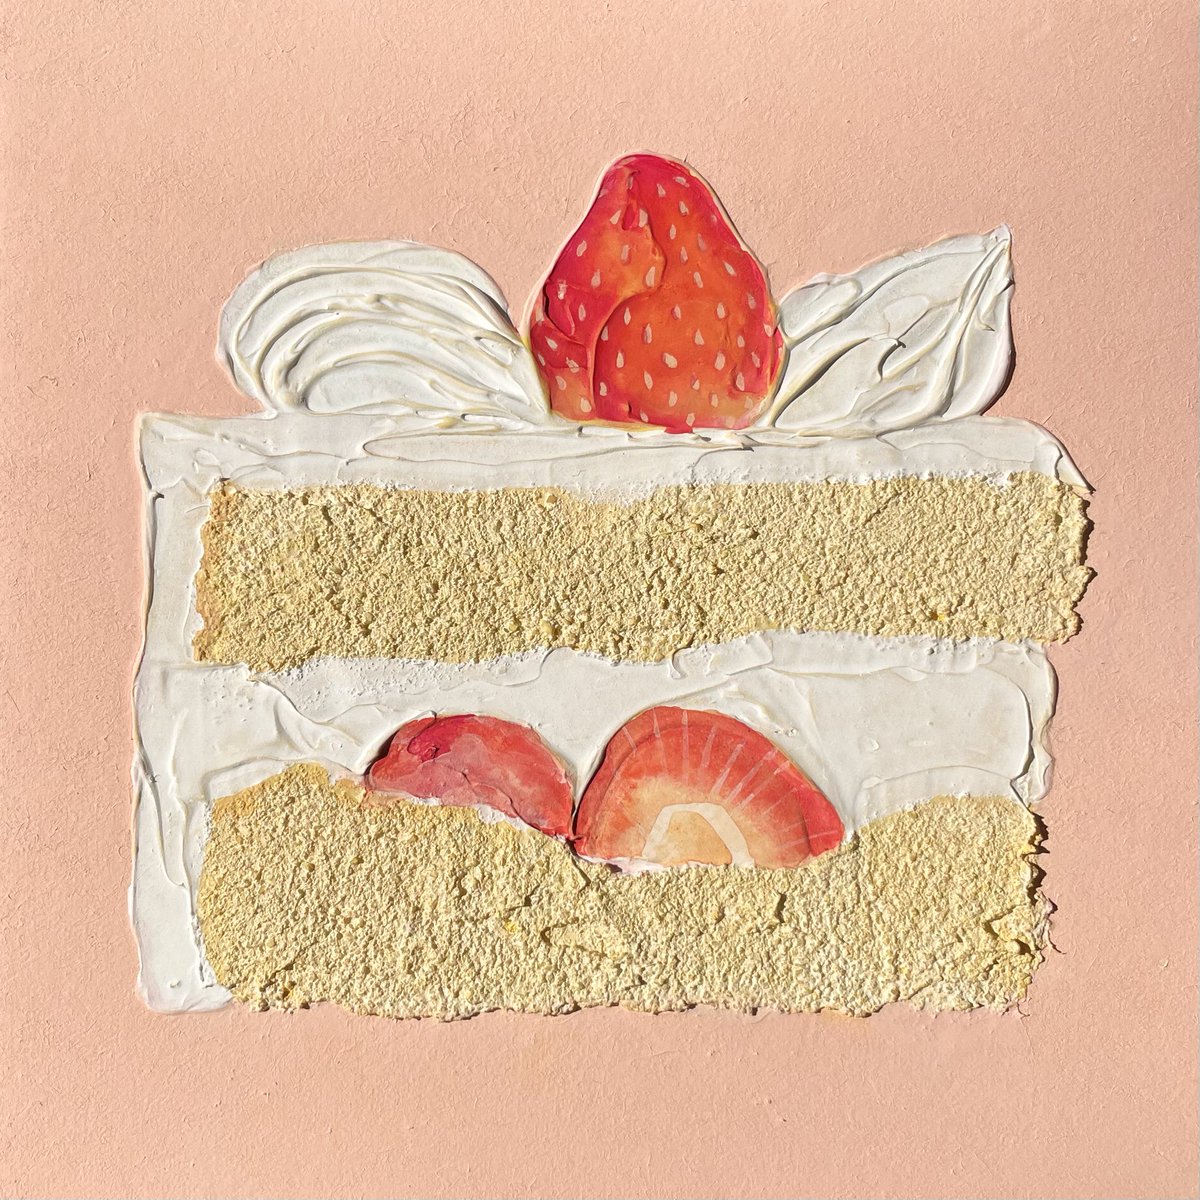 「いちごのショートケーキ 」|𝓝𝓪𝓽𝓼𝓾𝓶𝓲🍓Natsumi Takahashiのイラスト